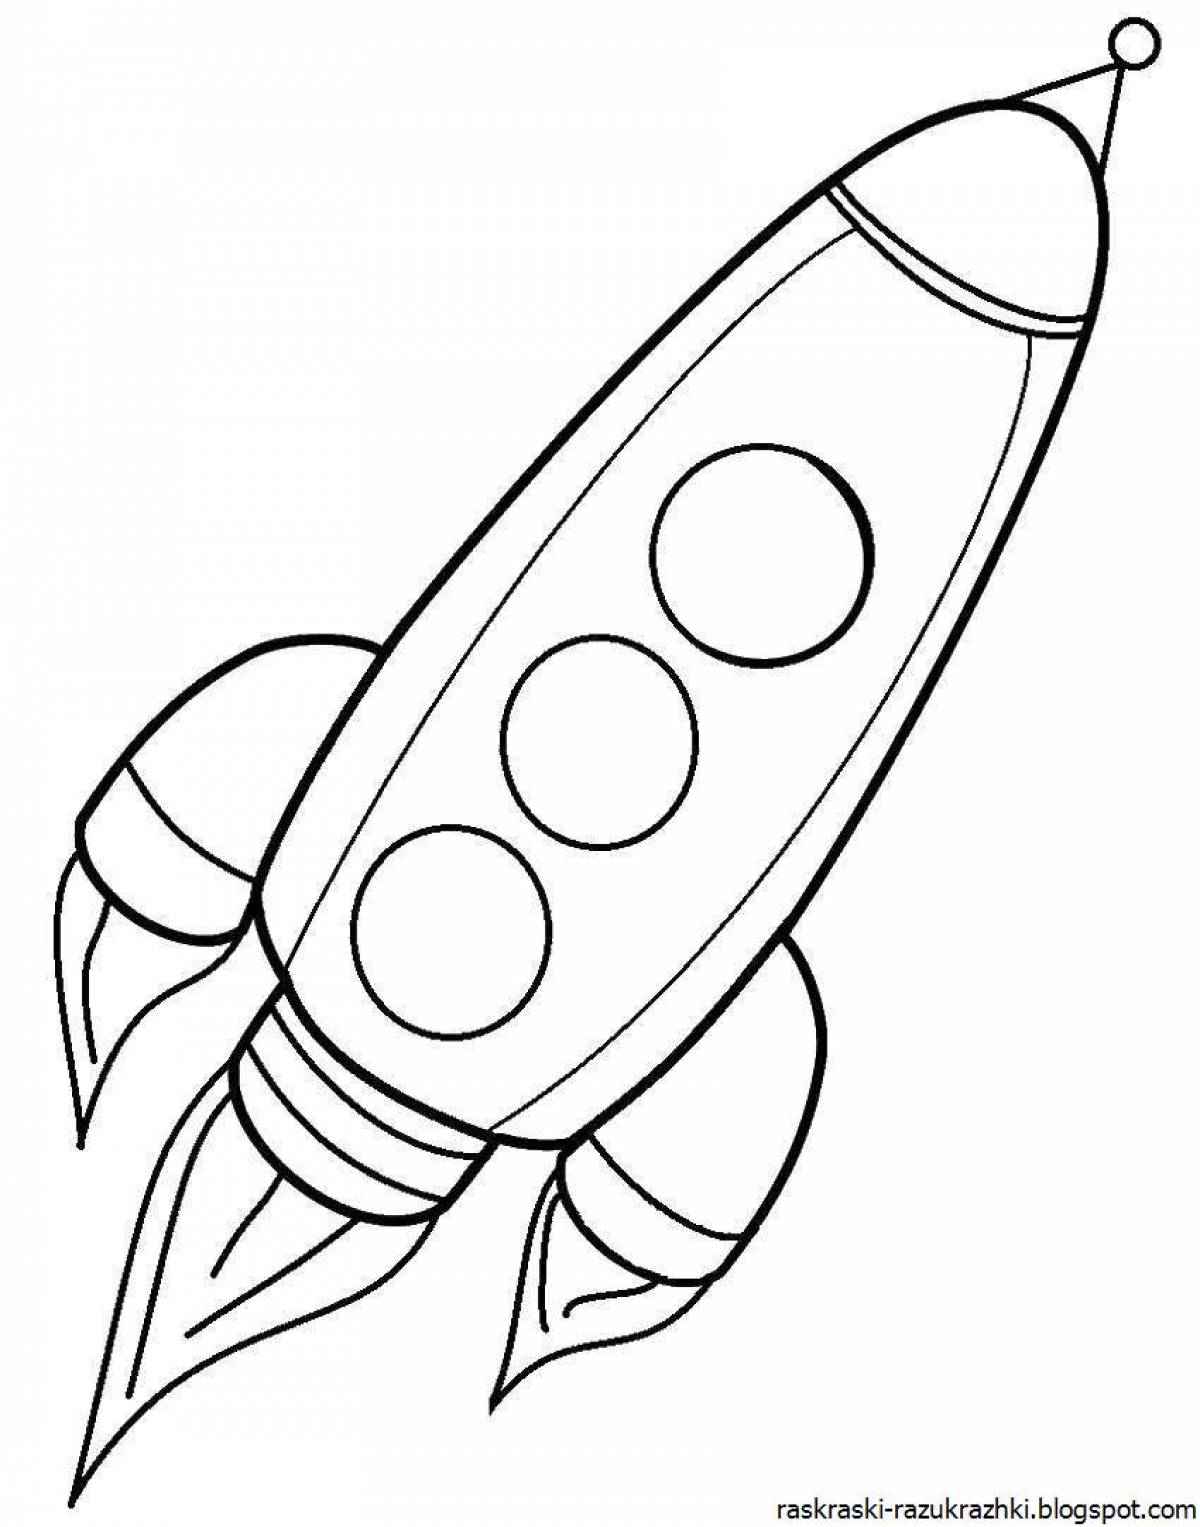 Раскраска ракета для детей 4 лет. Ракета раскраска. Ракета раскраска для детей. Космическая ракета раскраска. Раскраска ракета в космосе для детей.